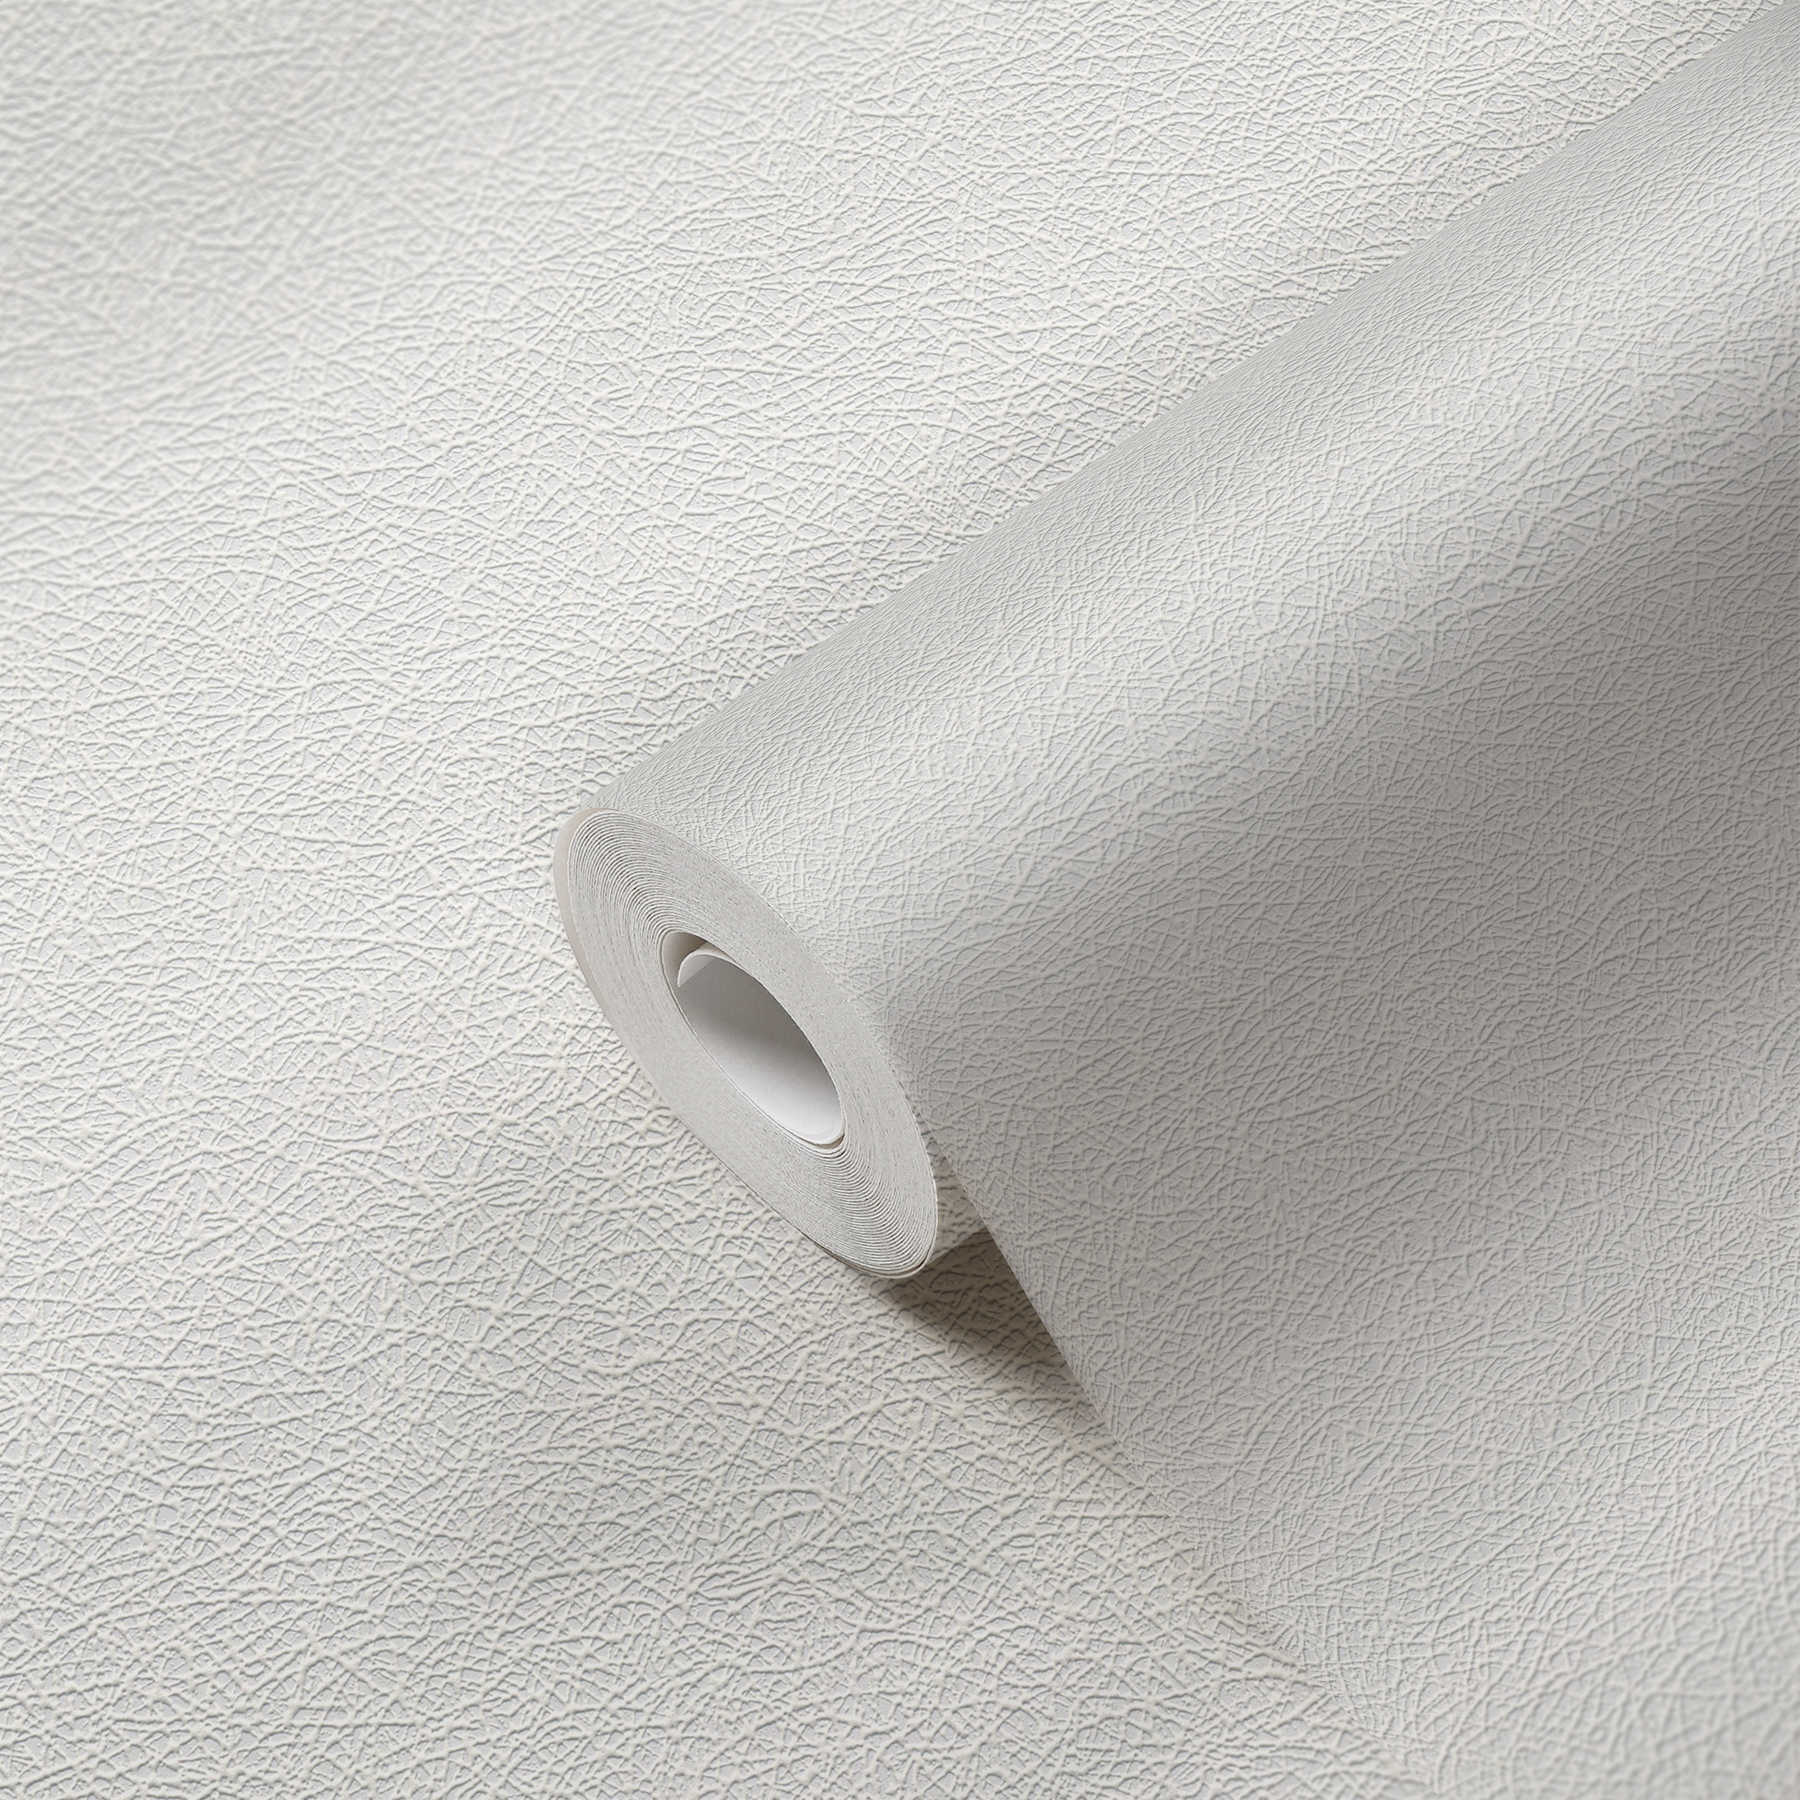             Wit structuurbehang met vezelpatroon en stoflook - wit
        